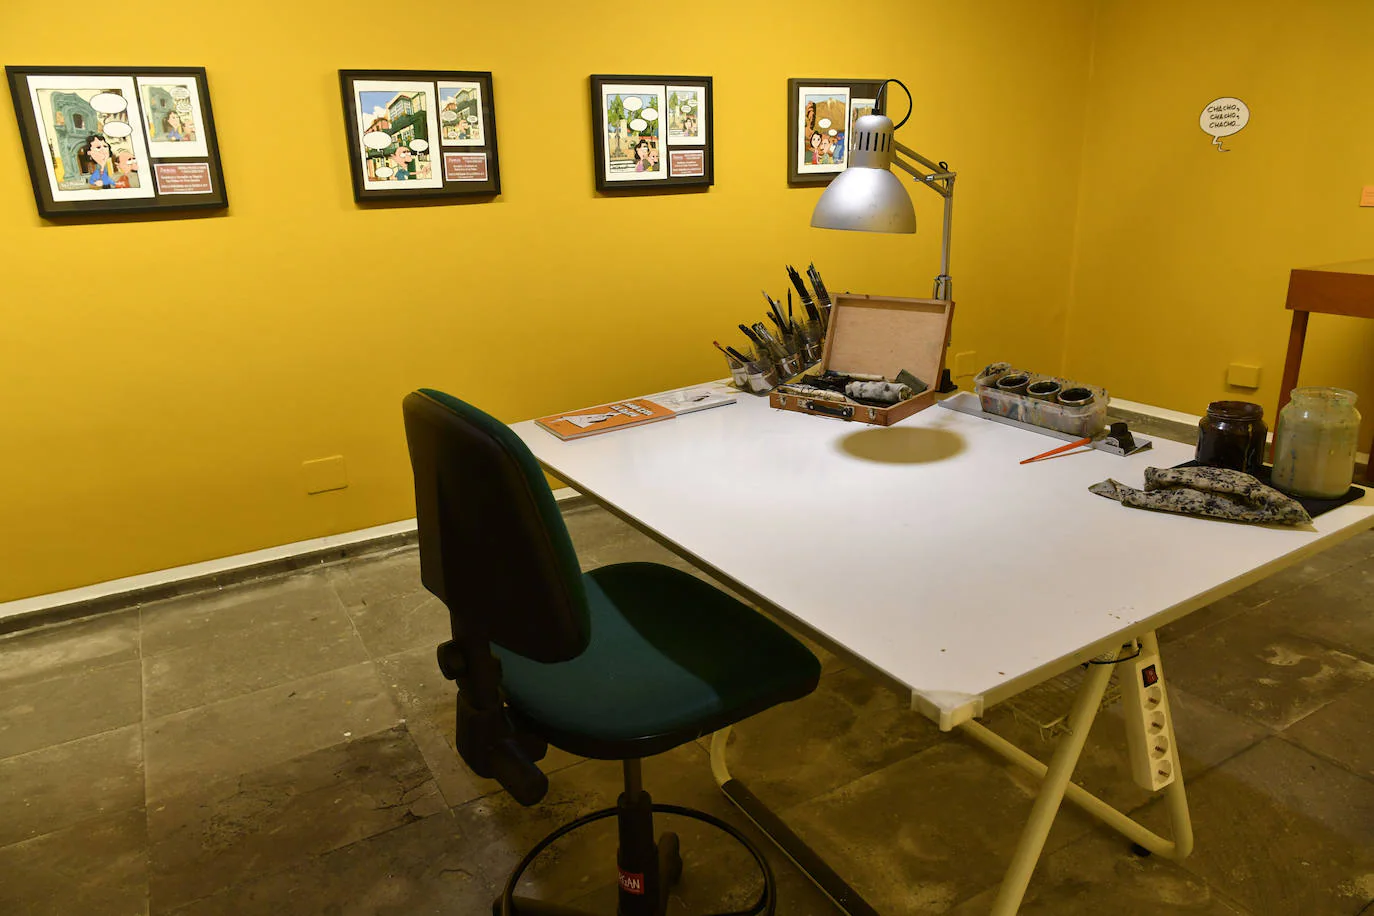 Mesa de trabajo de Morgan, que ocupa un espacio central de la exposición.